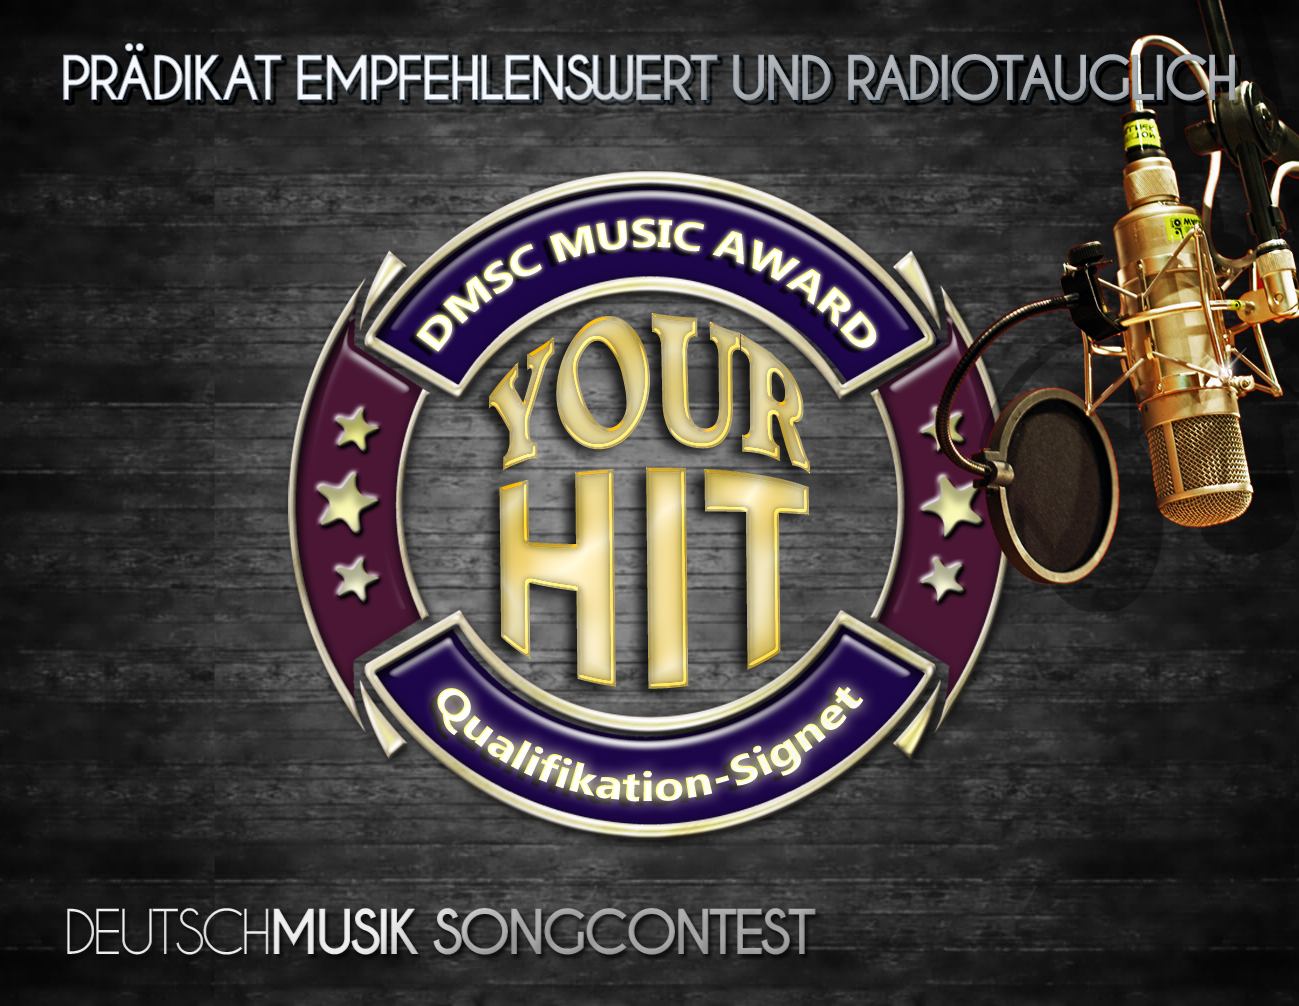 YOUR-HIT Deutschmusik Song Contest - Prädikat empfehlenswert und radiotauglich